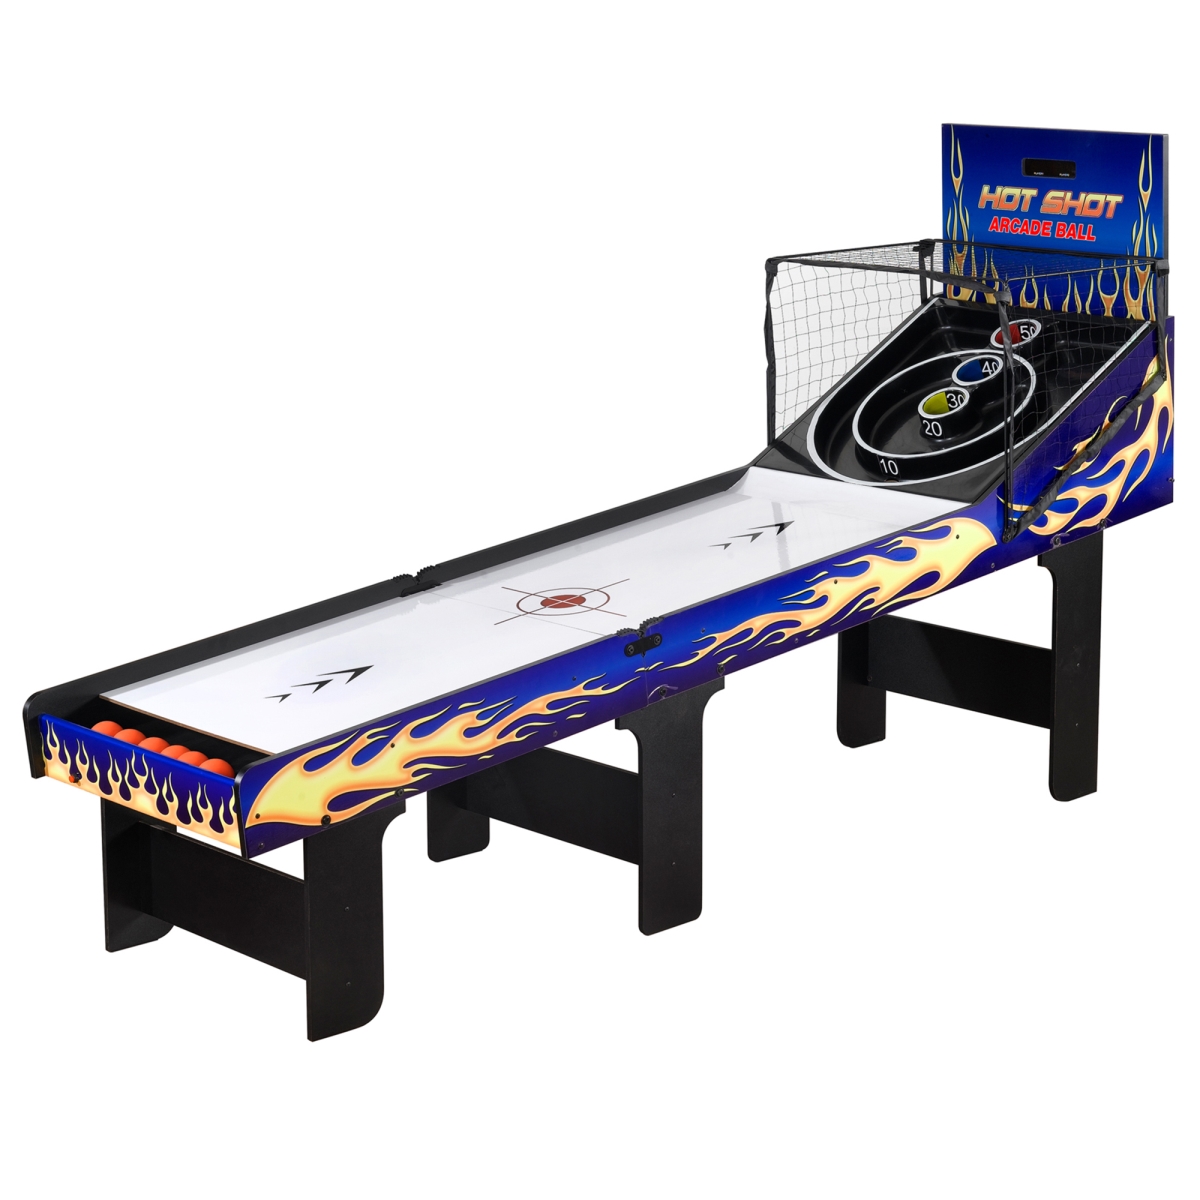 Ng2015 8 Ft. Hot Shot Arcade Ball Table, Blue